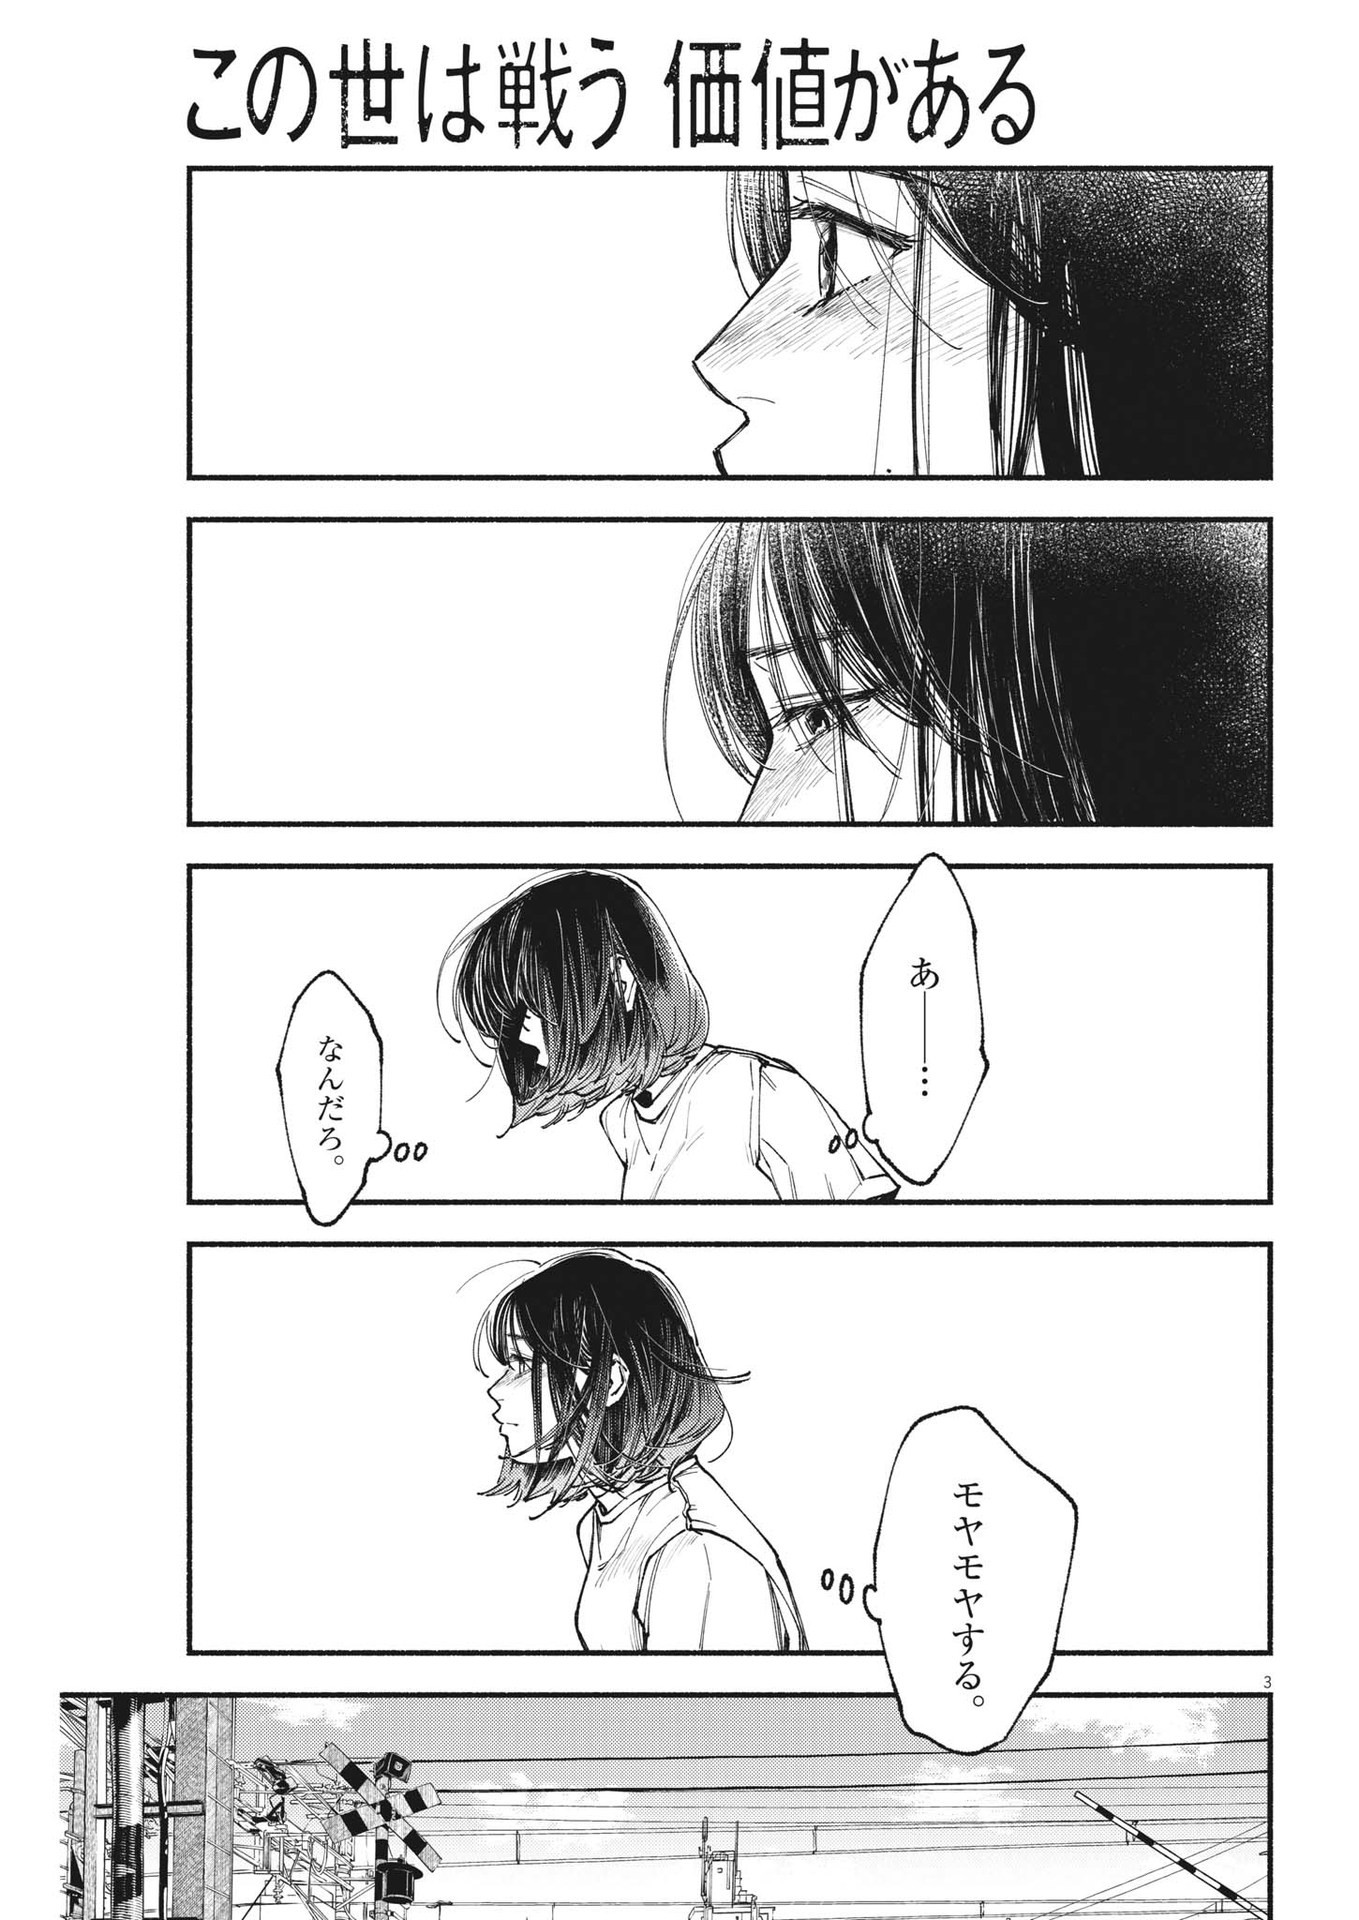 Konoyo wa Tatakau Kachi ga Aru  - Chapter 19 - Page 3